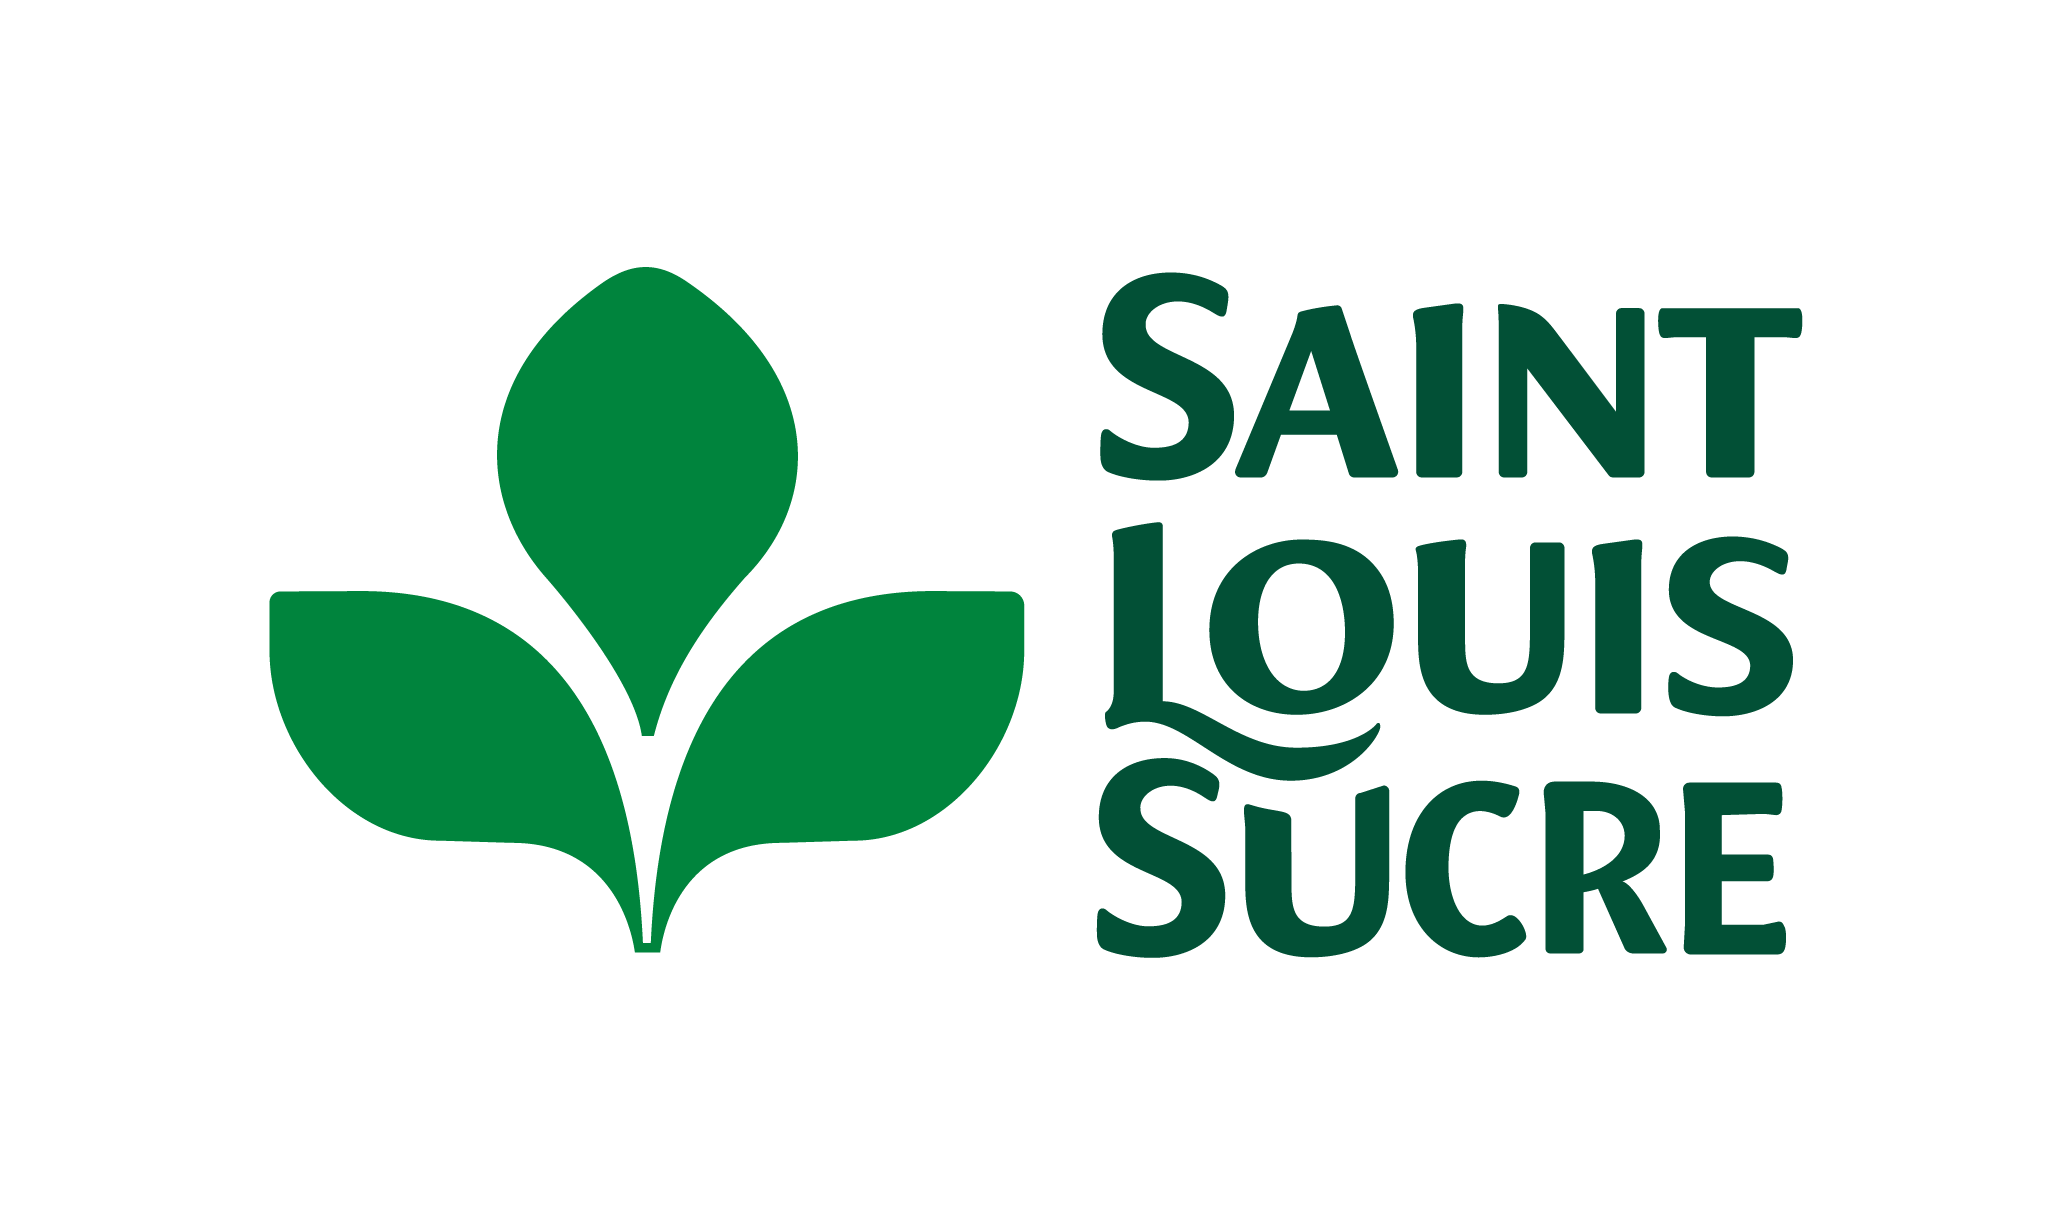 Saint Louis Sucre - Adopt1Alternant - Offres d'emploi en stage et alternance